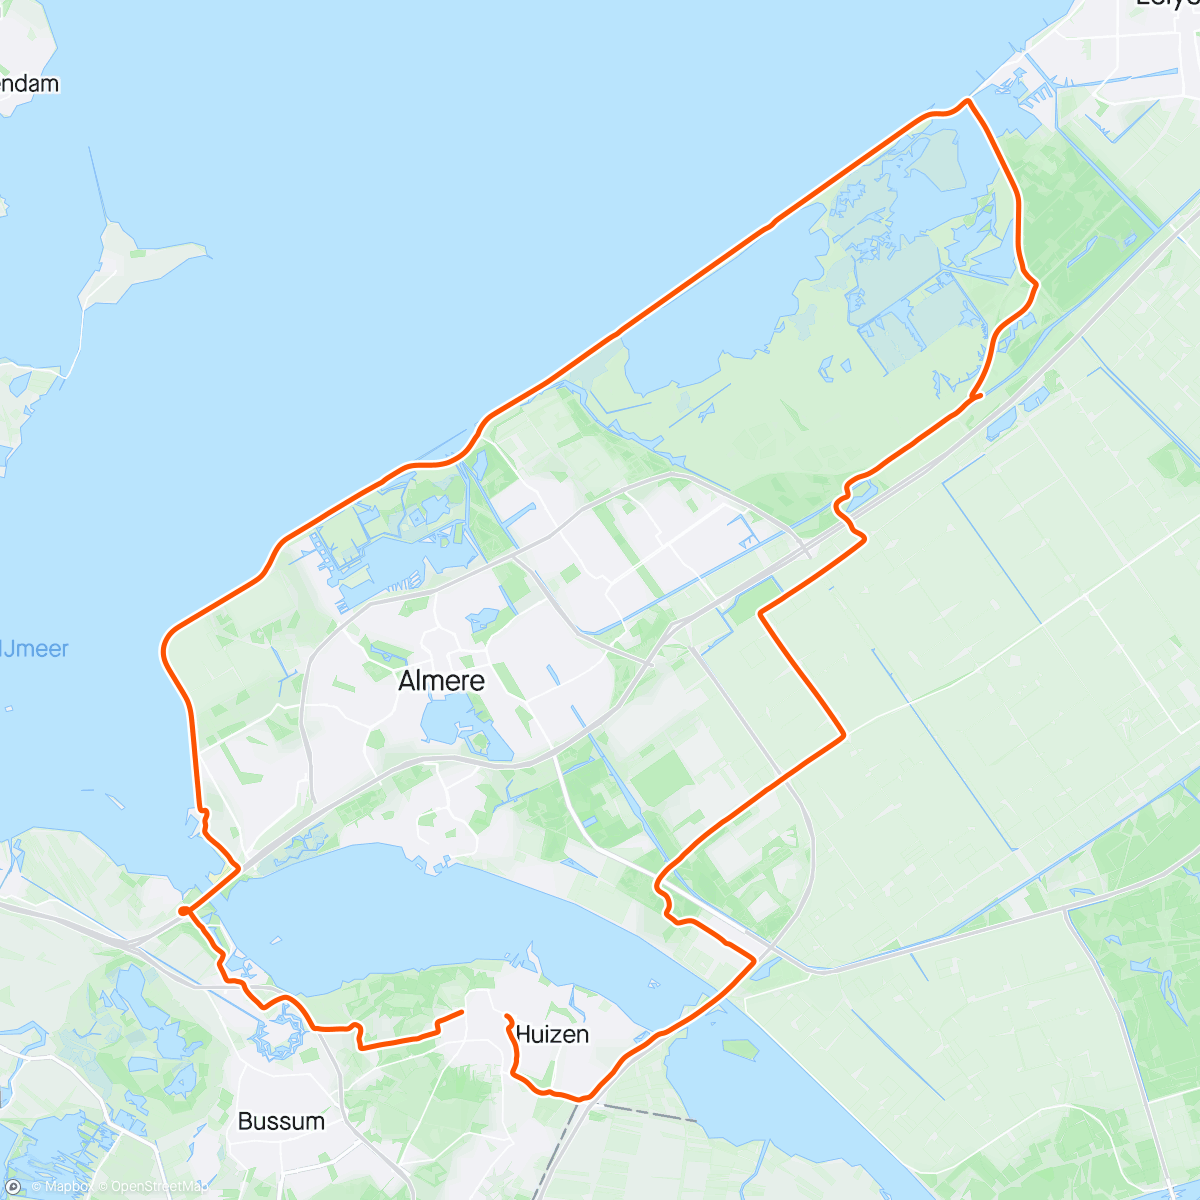 「Rondje Oostvaardersplassen」活動的地圖